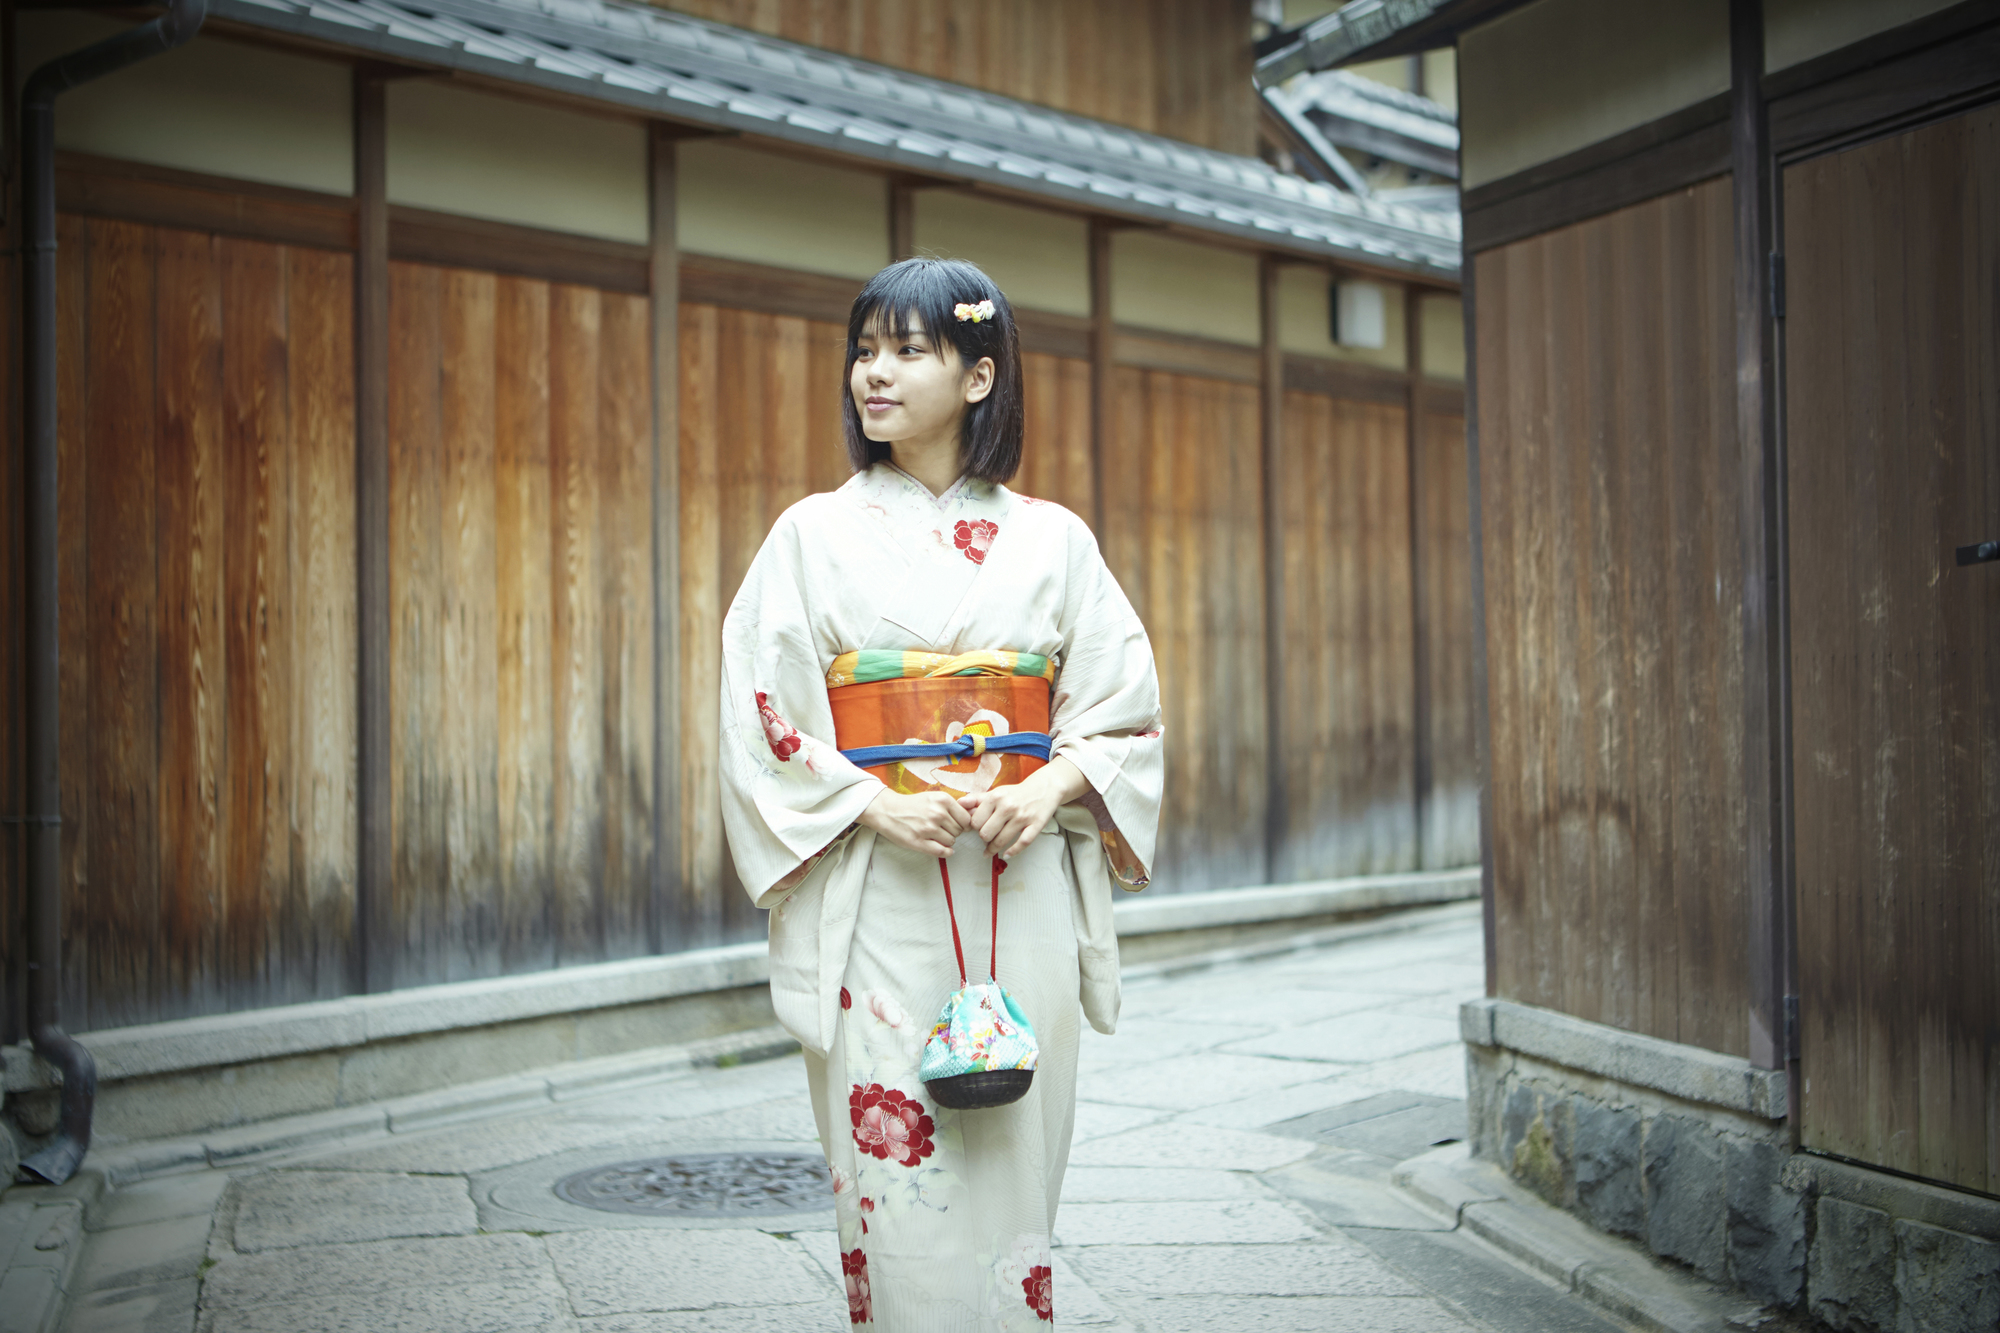 京都を着物で歩くのは恥ずかしい 京都の街並みに合う着物の選び方とは 着物大事典 着物コラム 京都 エリア別おすすめ情報 京都 浅草で着物 を楽しむなら 着物レンタルvasara